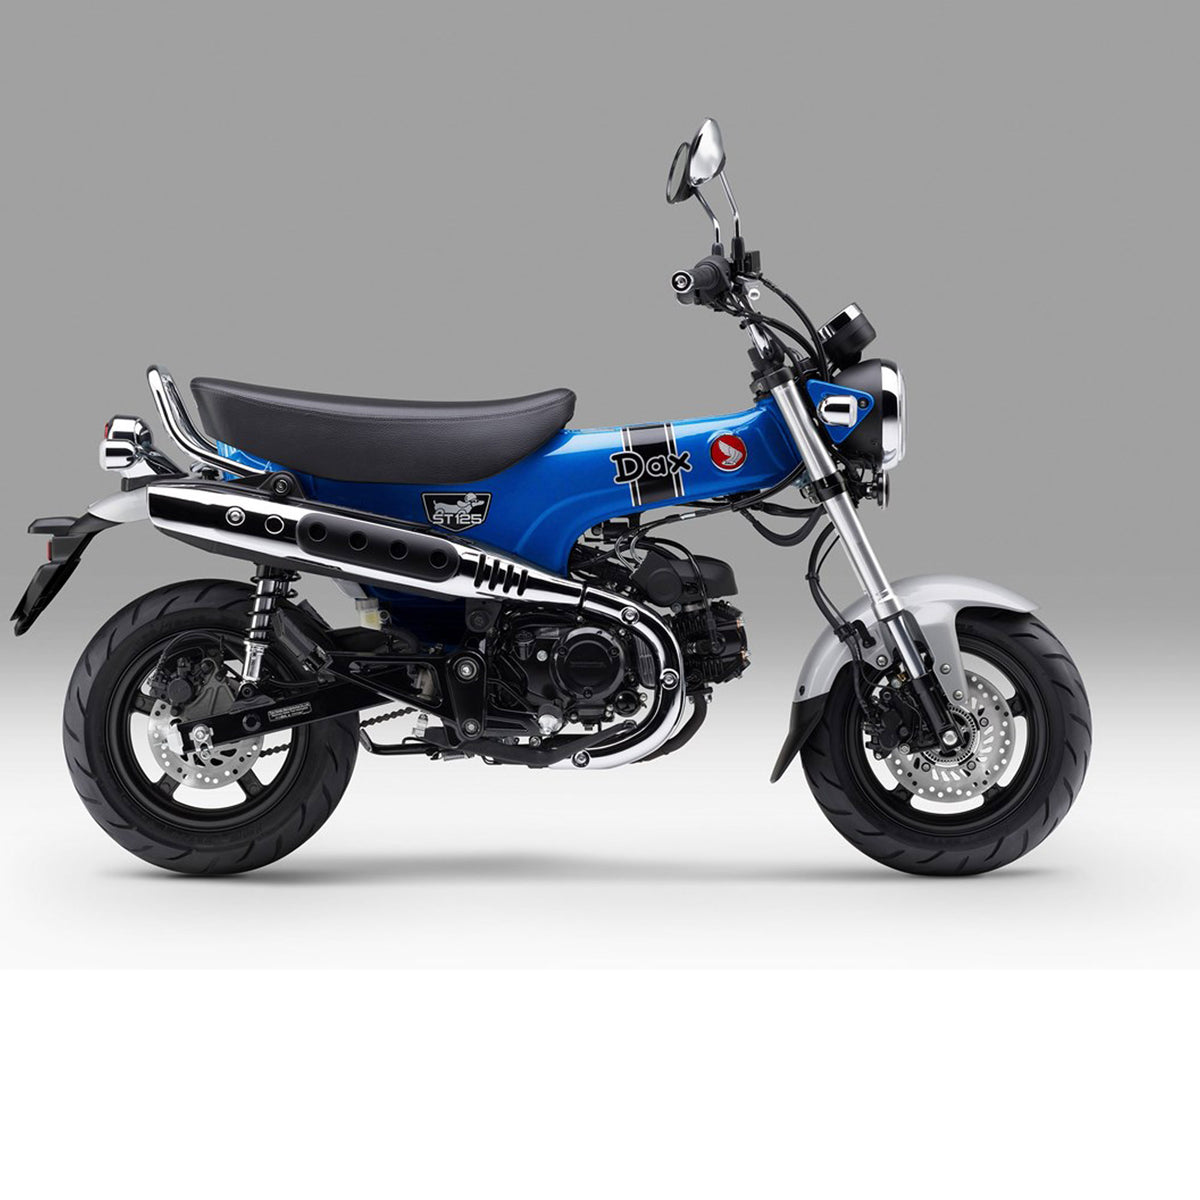 New Honda Bikes | 125cc | Bikes from Honda of Bournemouth | Dax125